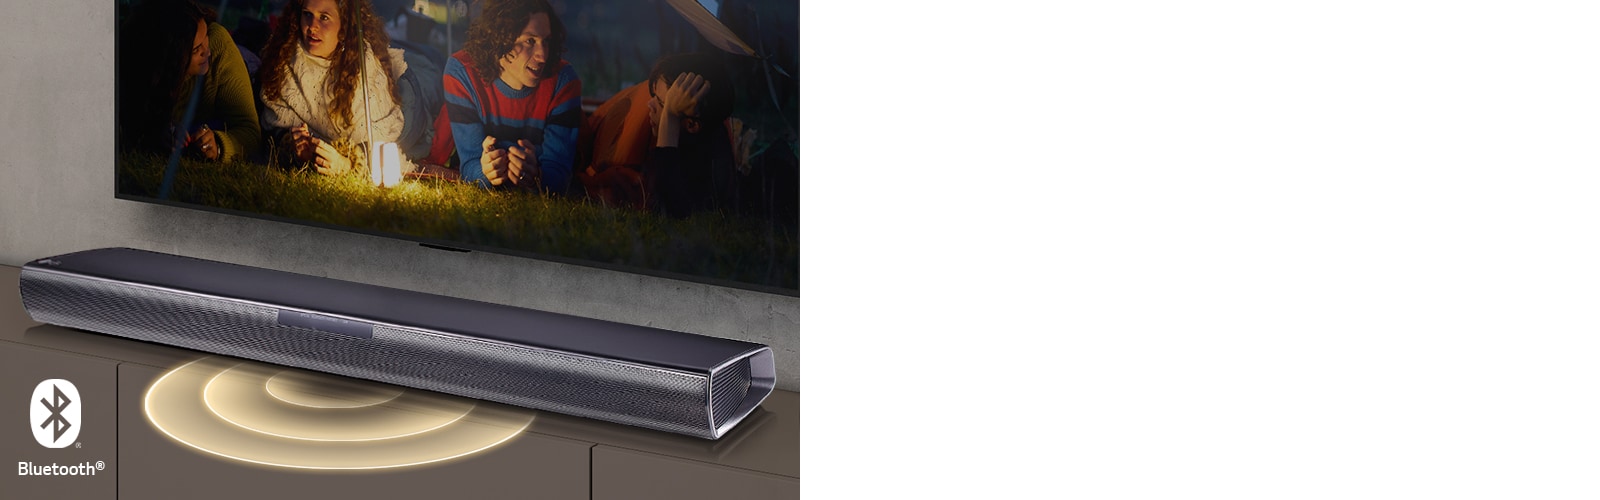 LG TV hänger på väggen, skärmen visar två par som ligger utsträckta på gräset. Framför dem finns en lampa. LG Soundbar är nedanför LG TV. Grafik som visar ljud kommer ut från framsidan på soundbaren. Logotypen för Bluetooth ligger nere till vänster i bilden.